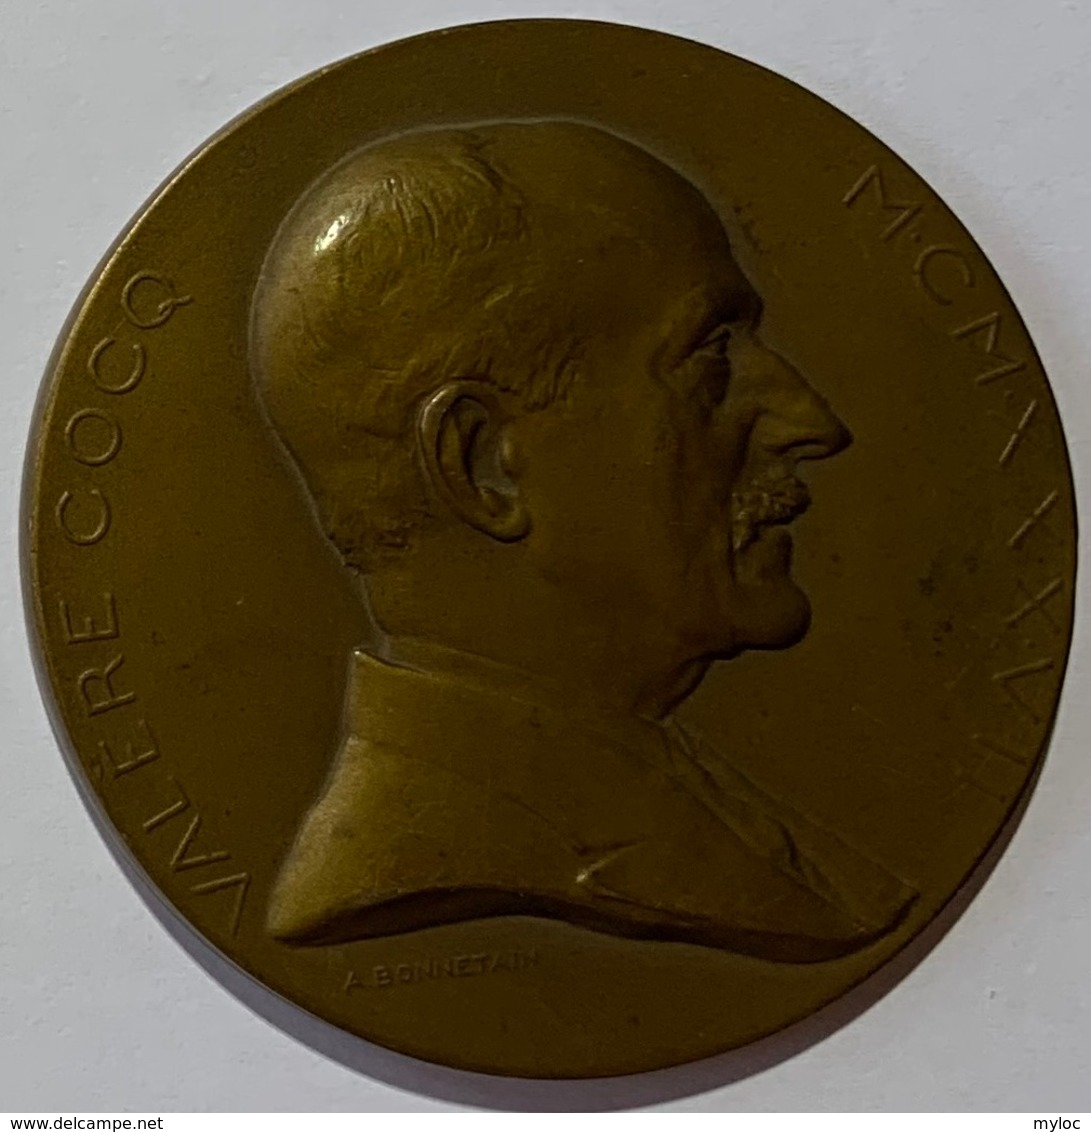 Médaille Bronze. Valère Cocq. Au Professeur Valère Cocq. 1909-1937. Armand Bonnetain. - Professionali / Di Società